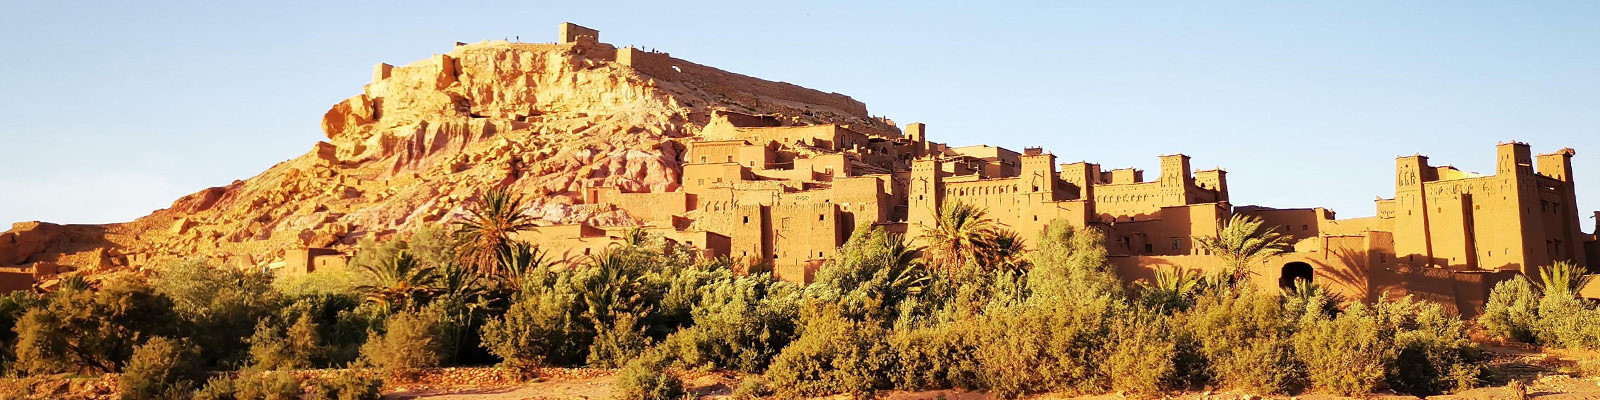 Voyage Maroc solidaire, responsable, pour un tourisme durable au Maroc